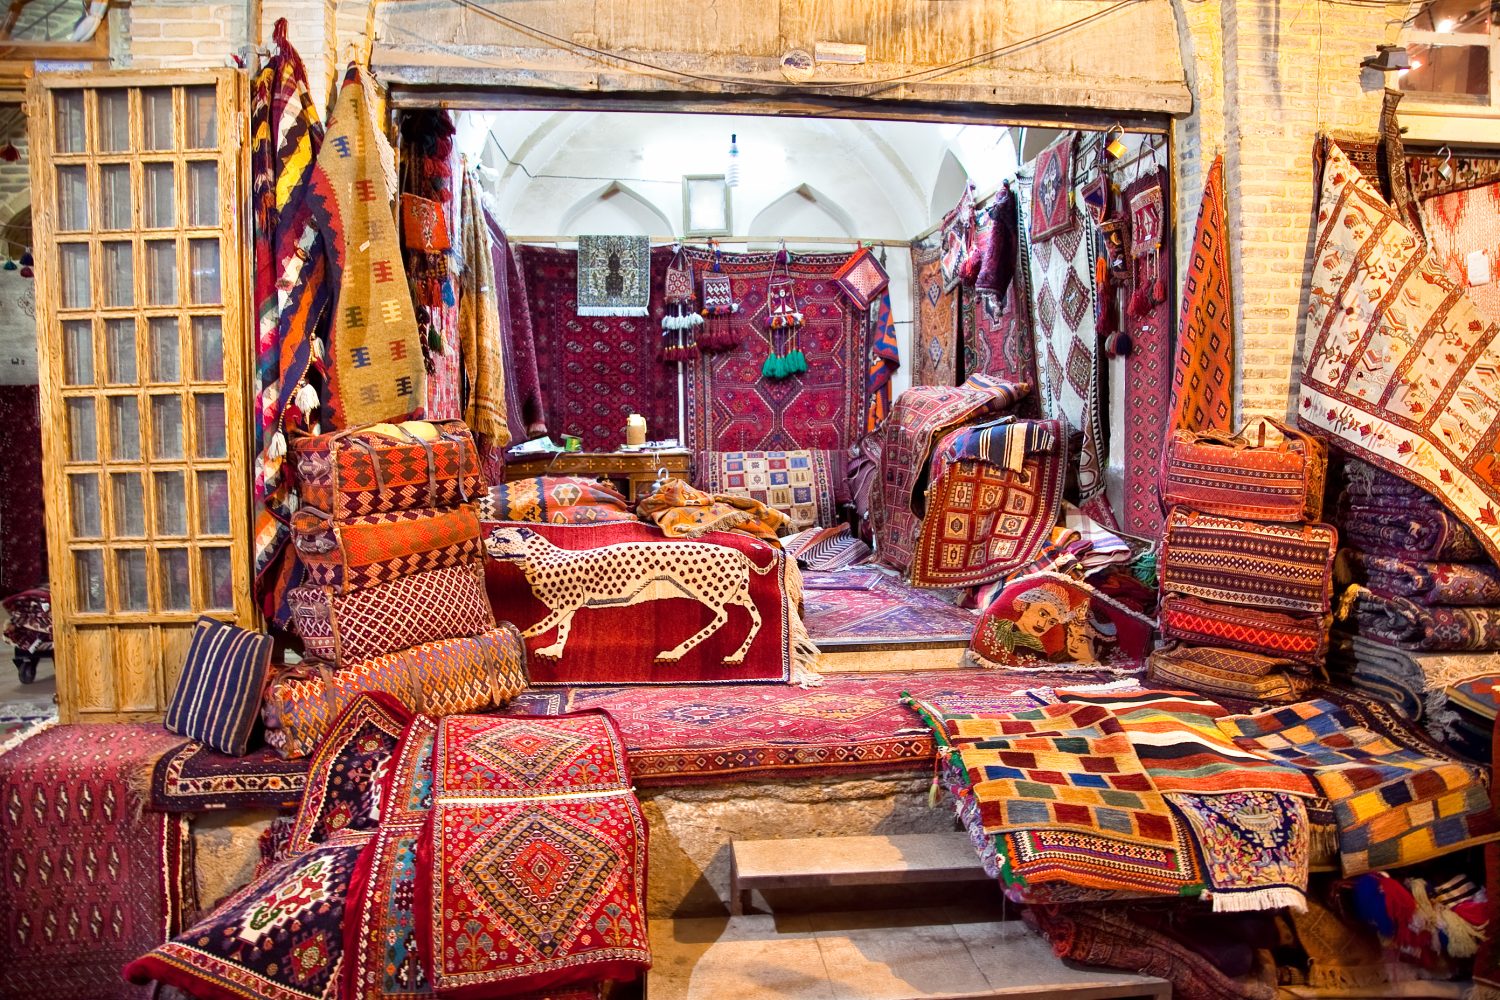 Negozio di tappeti persiani (tappeti e tappeti iraniani), Shiraz, Iran